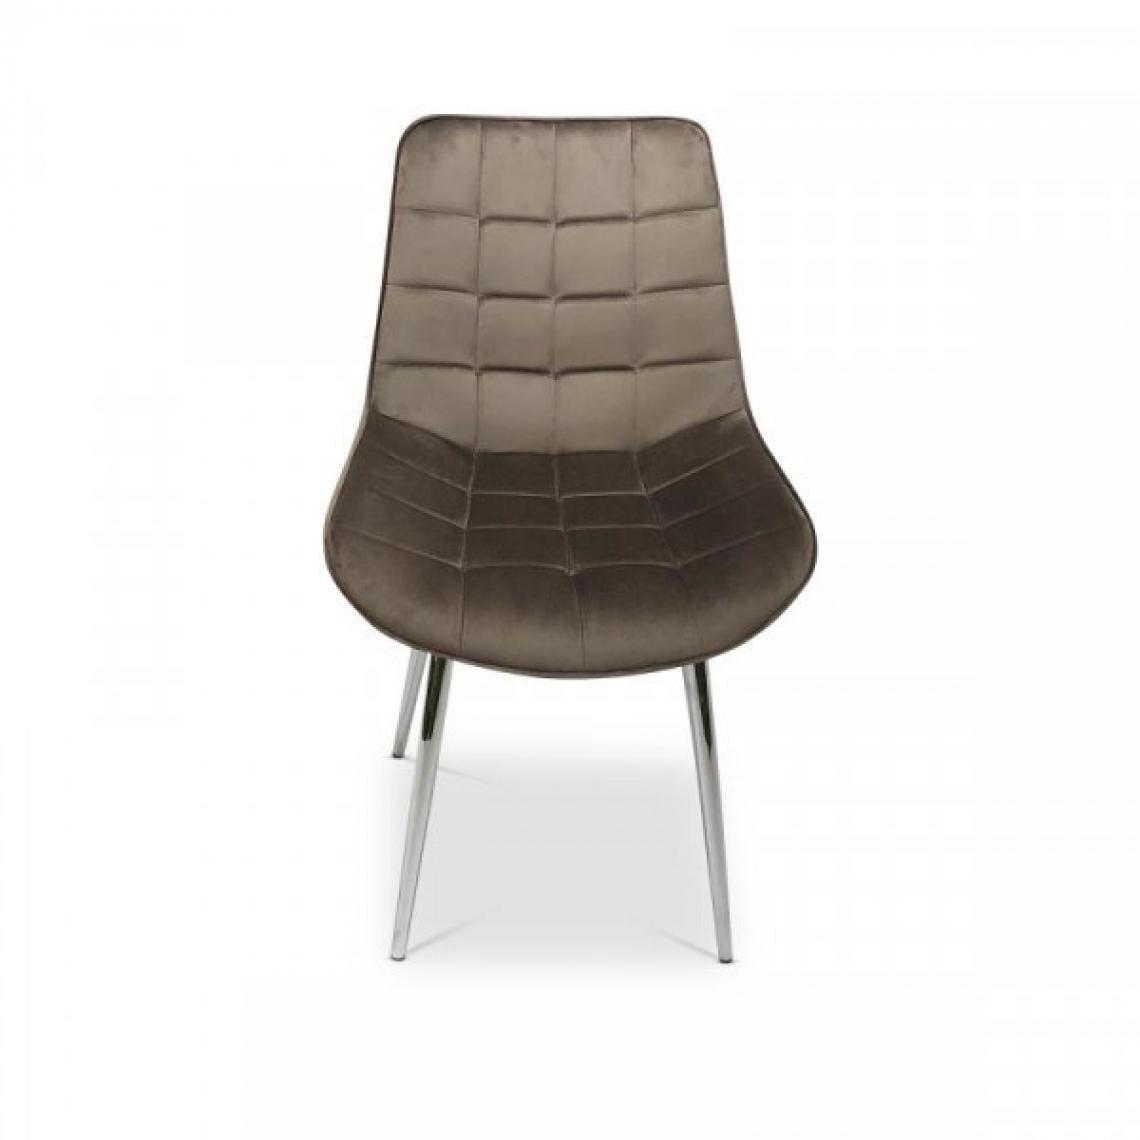 Dansmamaison - Chaise en tissu velours Marron - FATOU - L 53 x l 54 x H 85 cm - Chaises